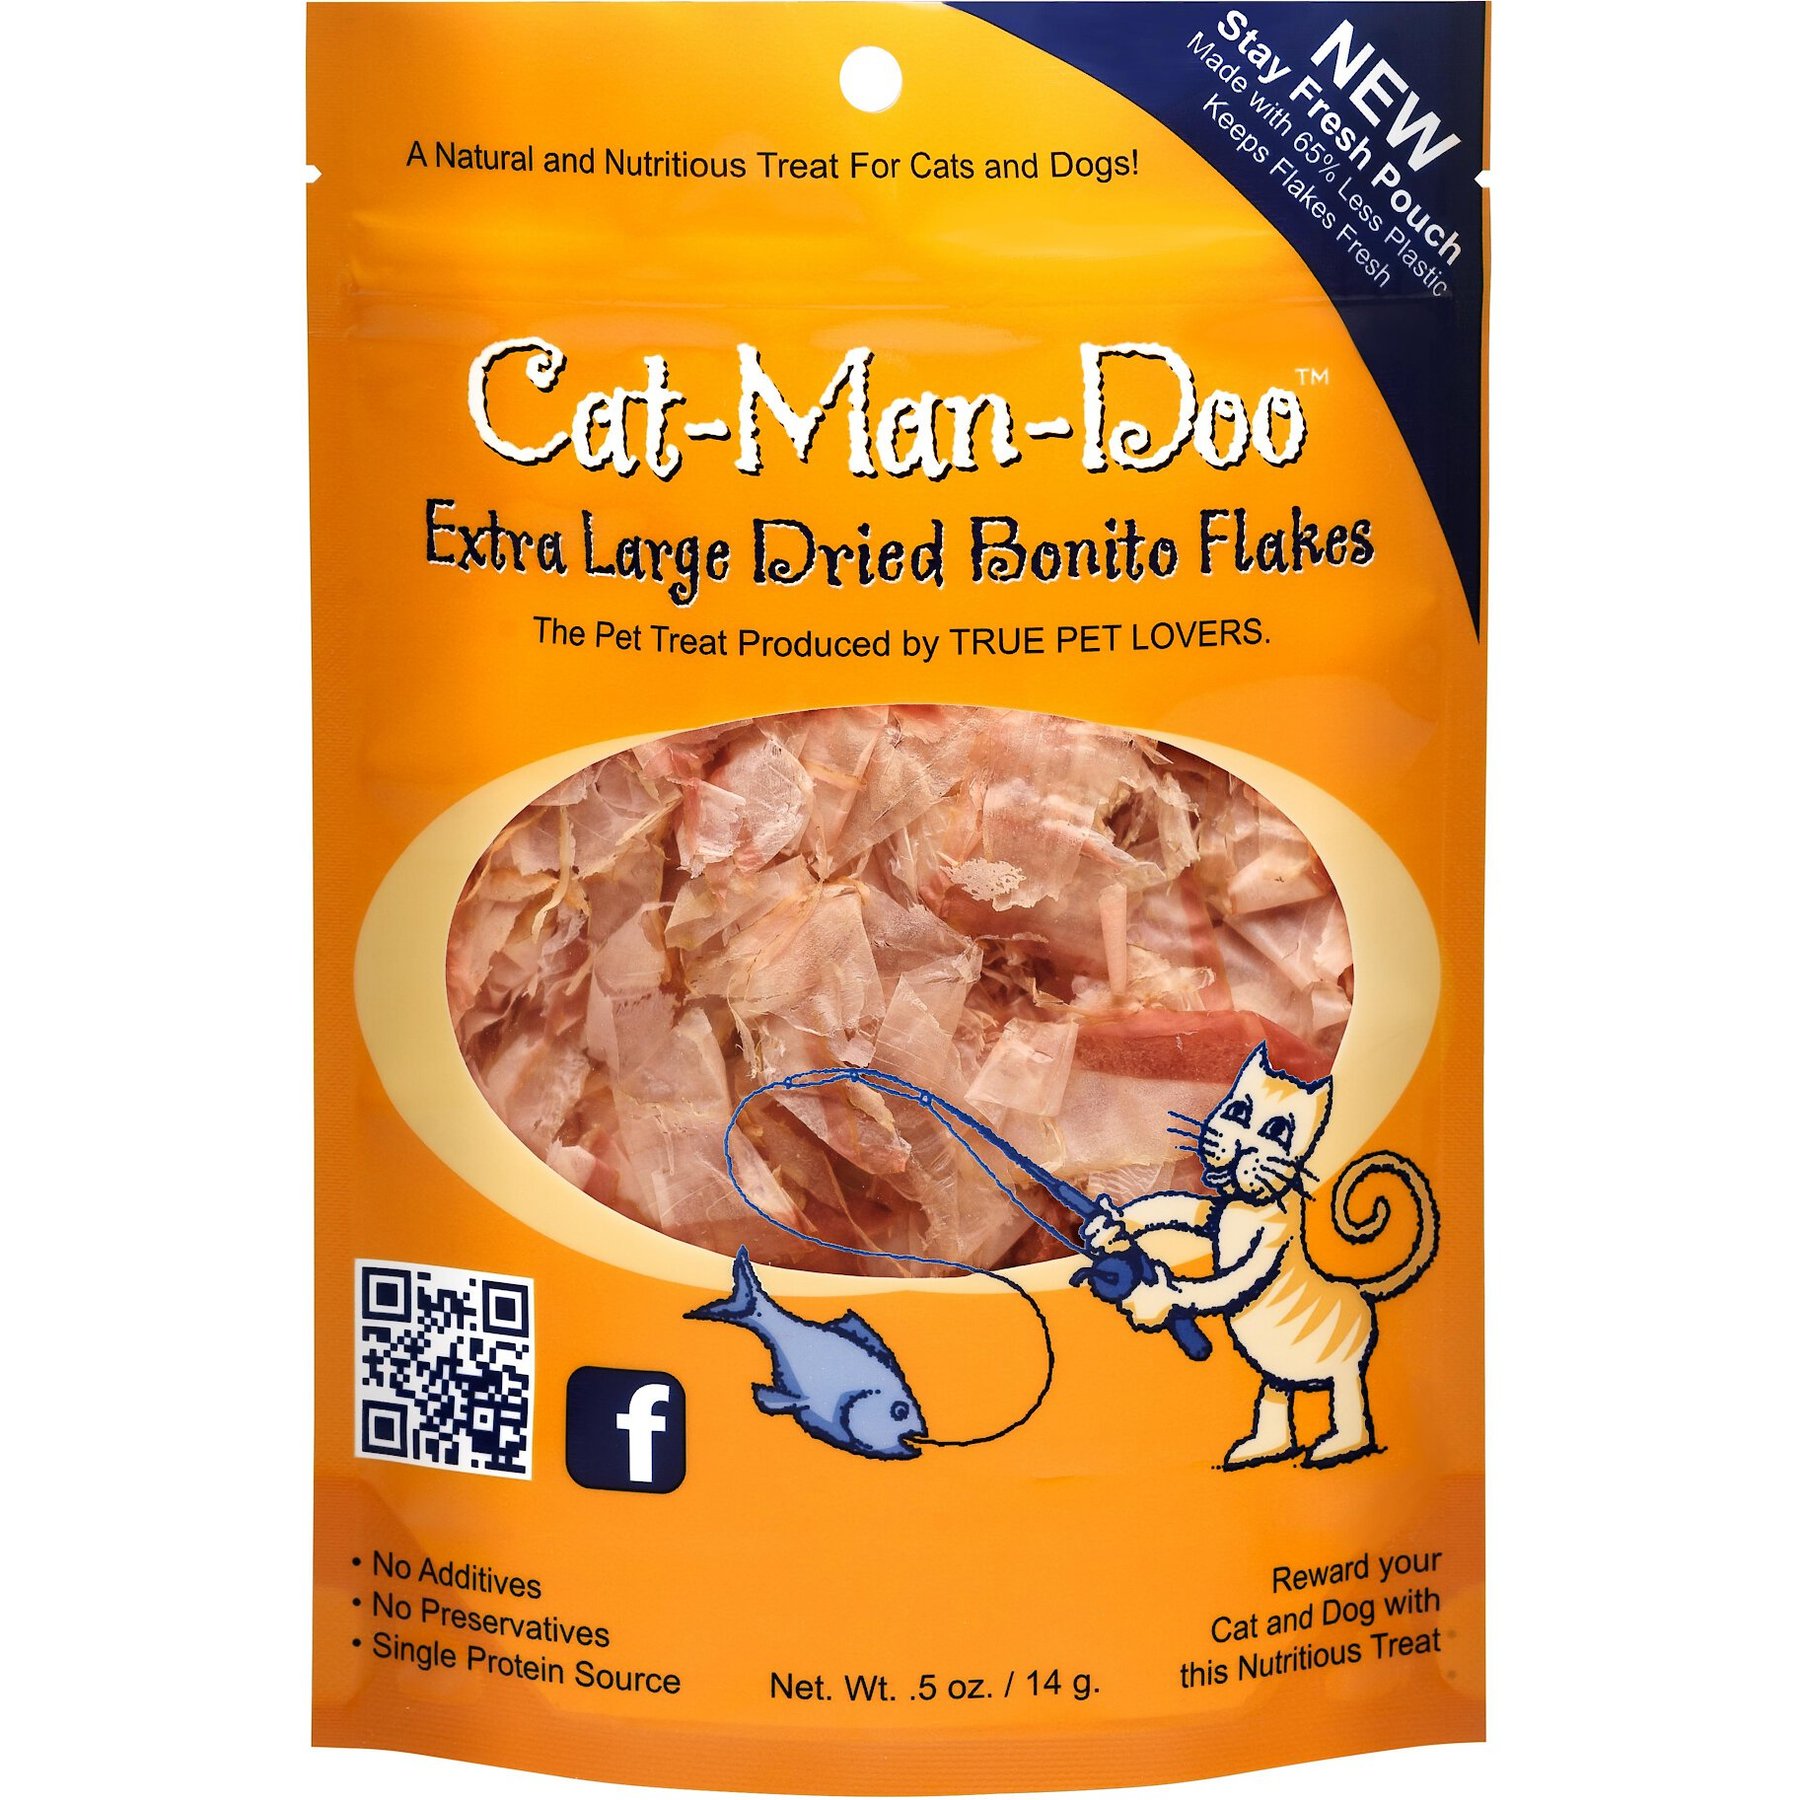 CAT-MAN-DOO Extra Large Dried Bonito Flakes Cat & Dog Treats, 0.5